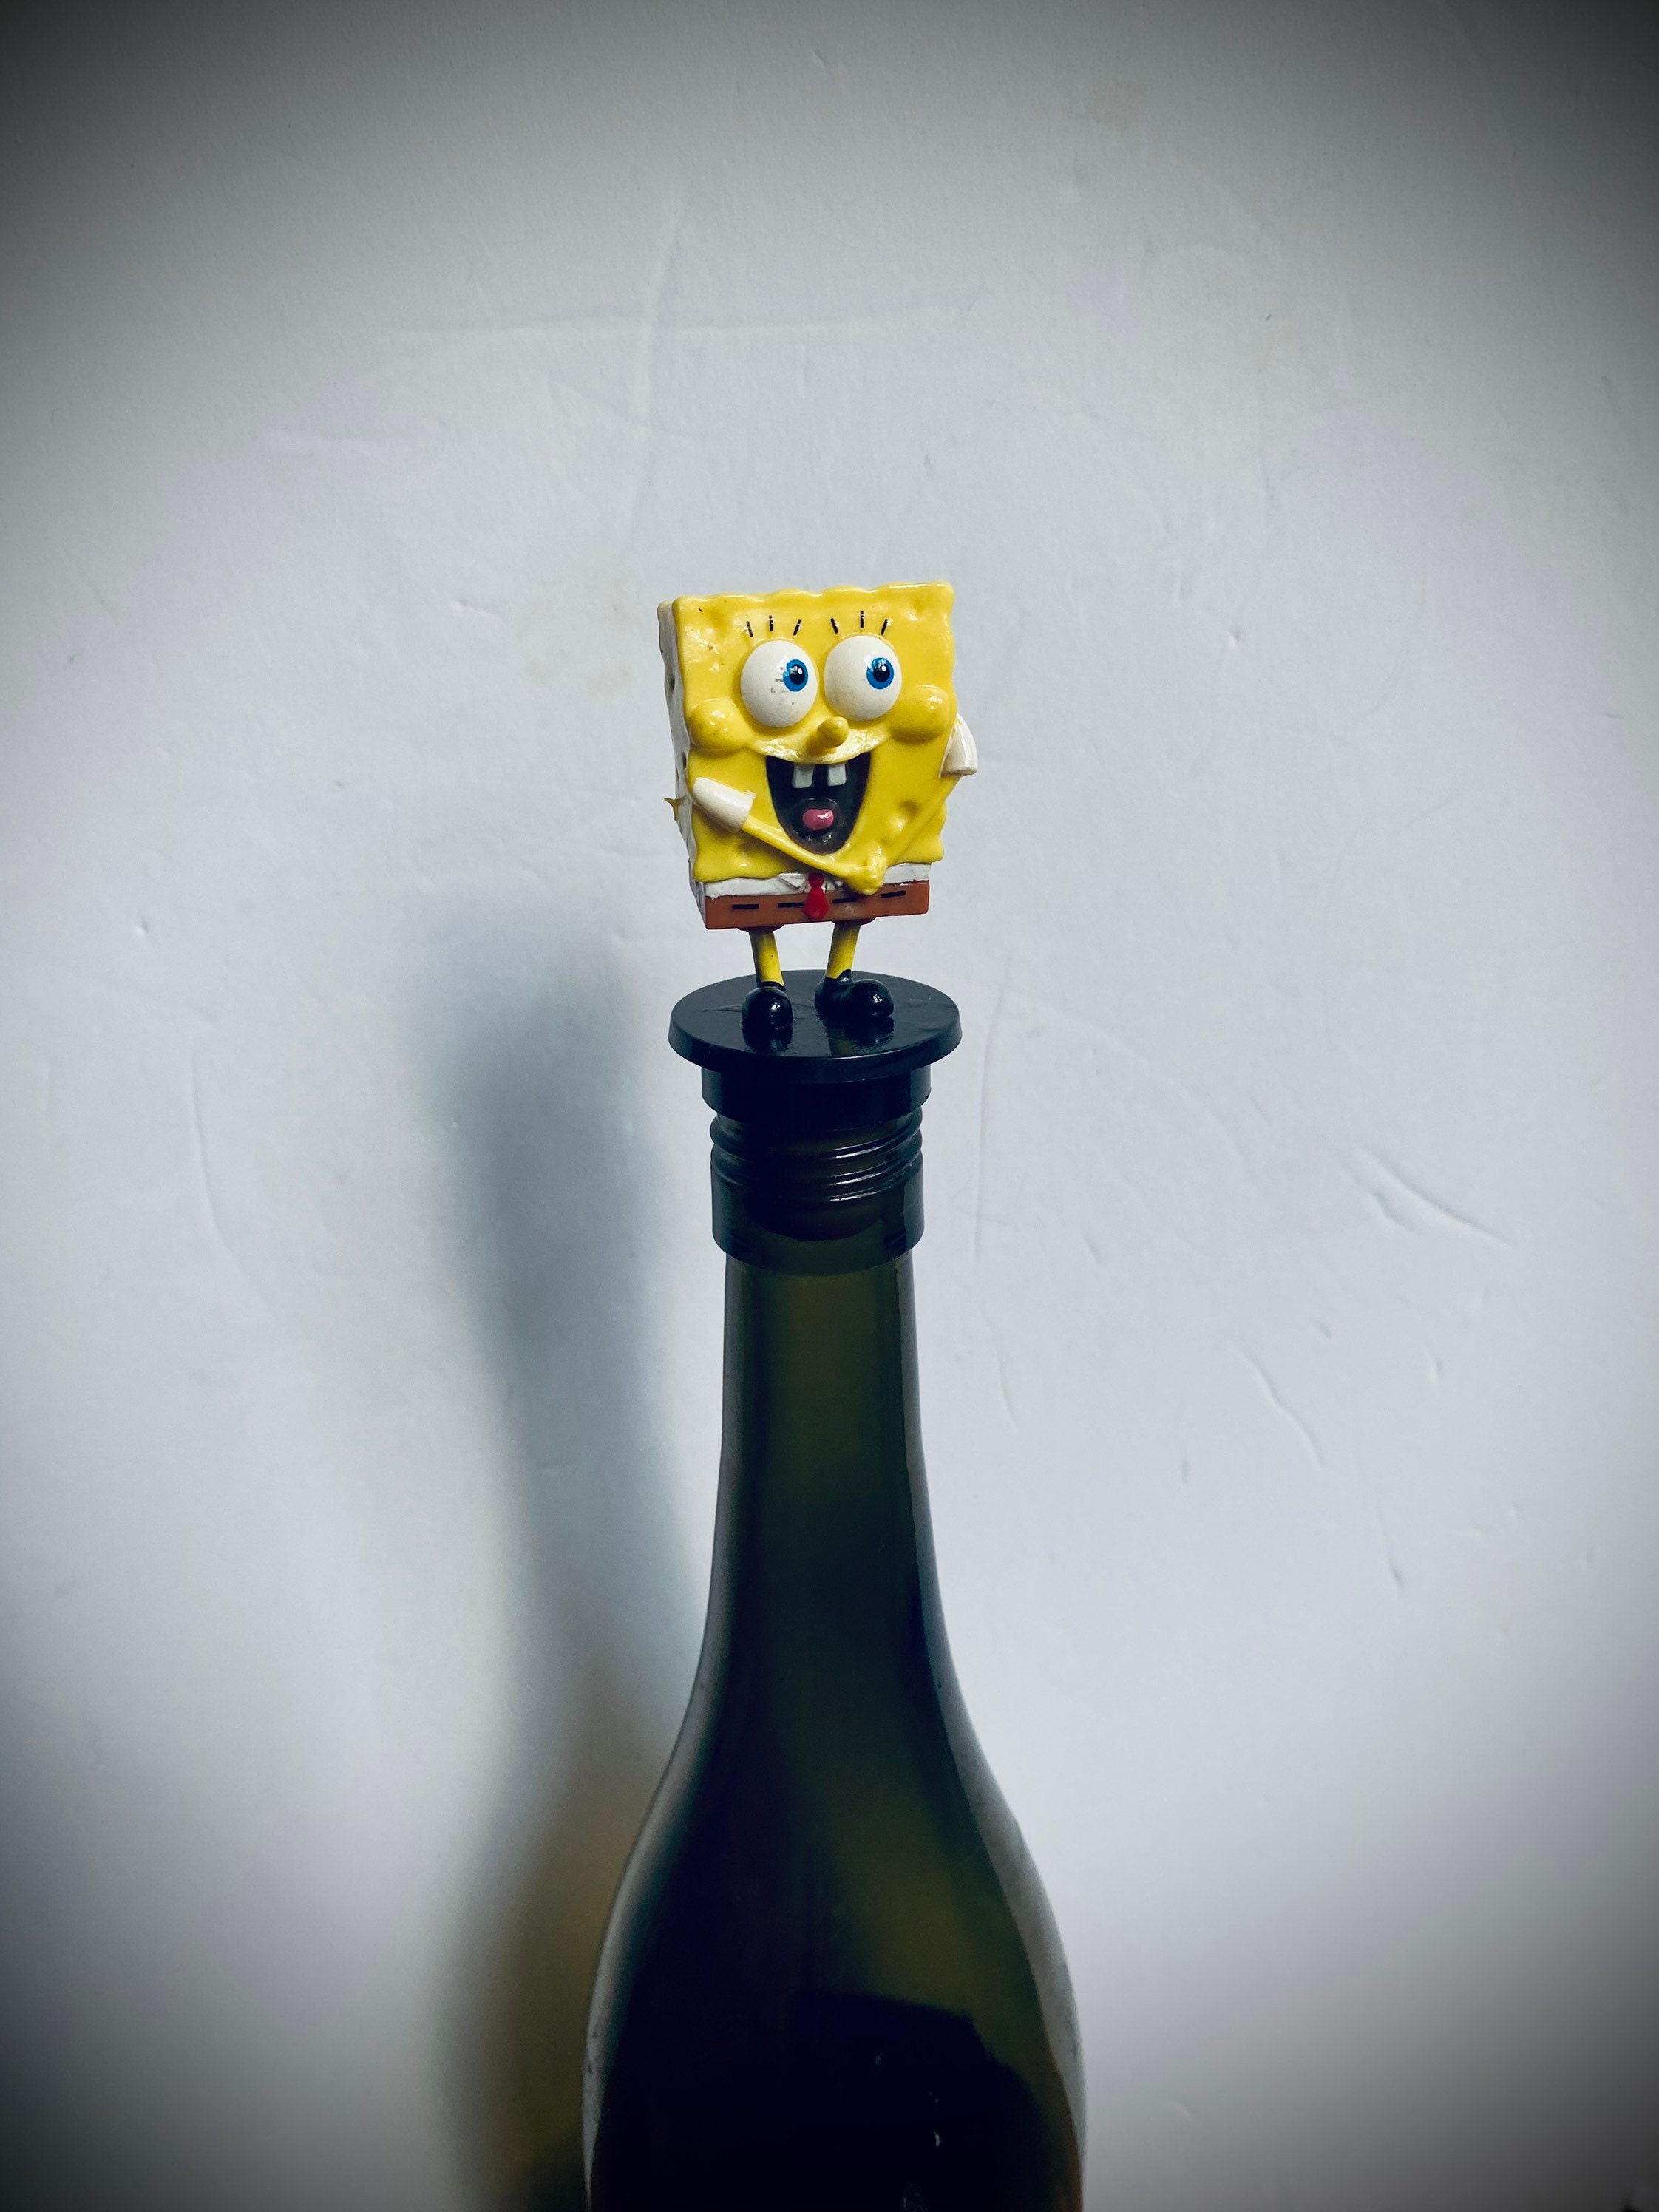 Spongebob Squarepants Inspired Character Water Bottles -  Denmark